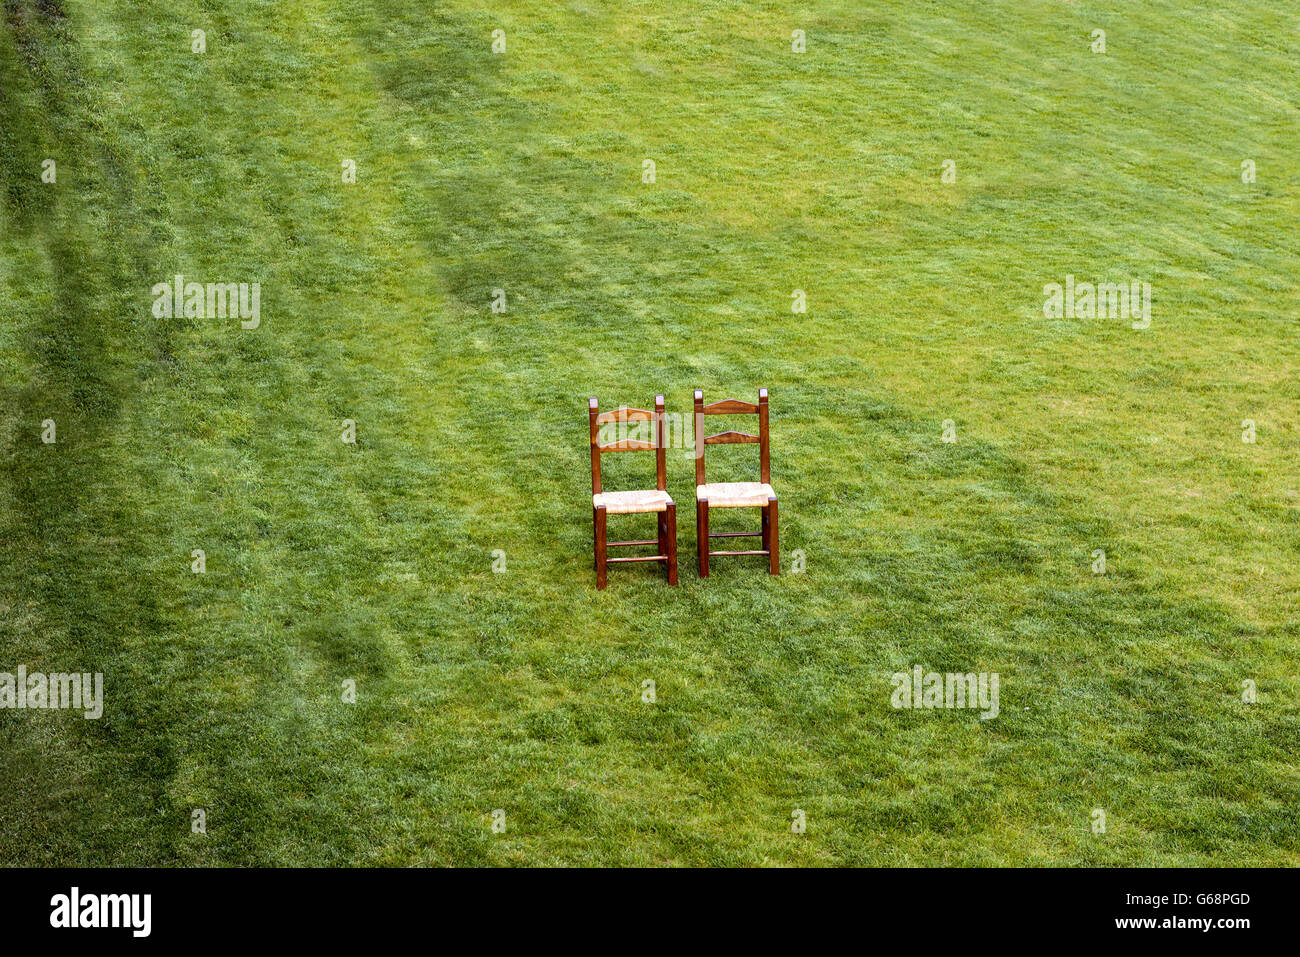 Une paire de chaises en bois solitaire sur l'herbe verte Banque D'Images